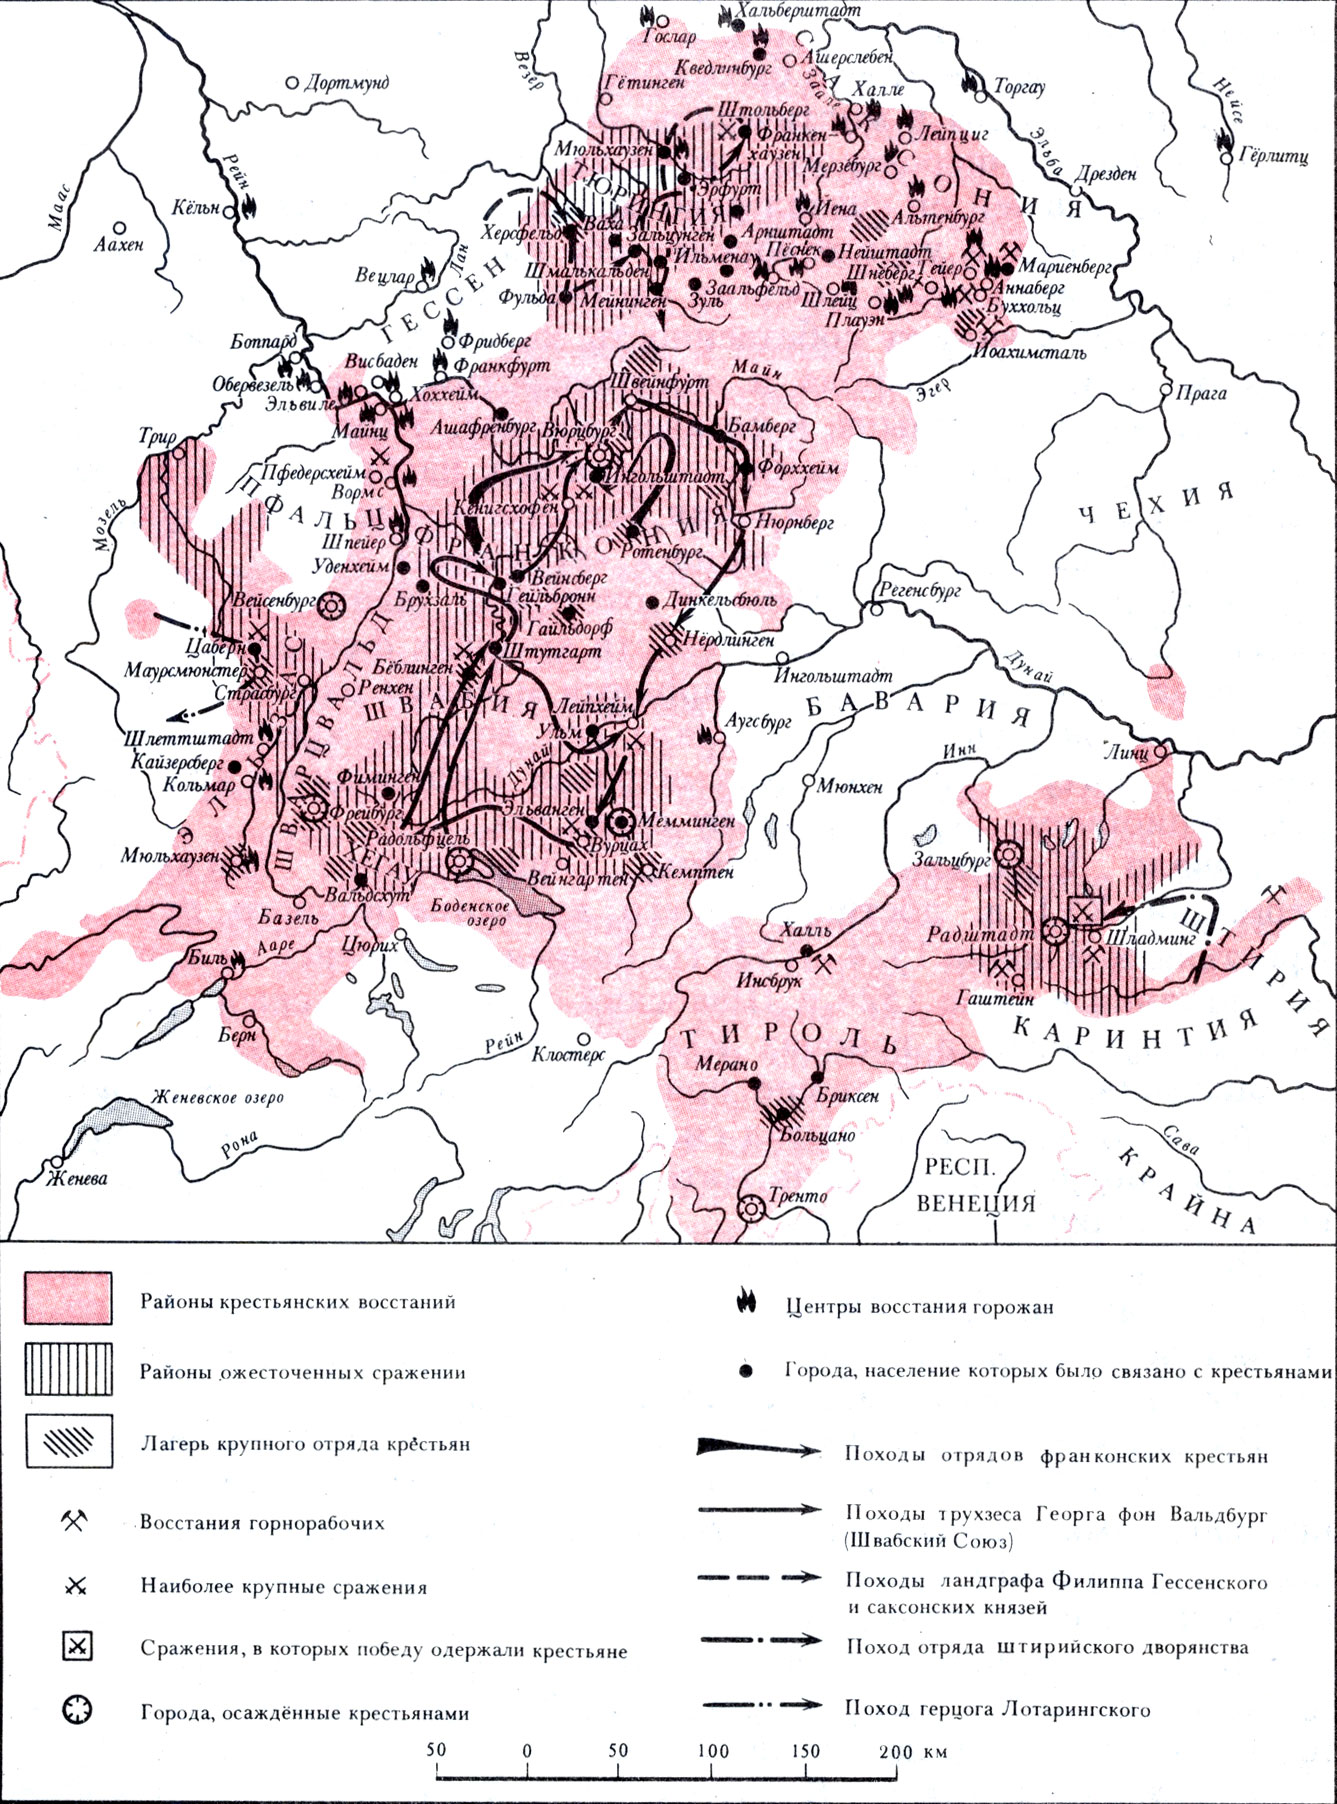 Реферат: Реформация и Великая Крестьянская война в Германии